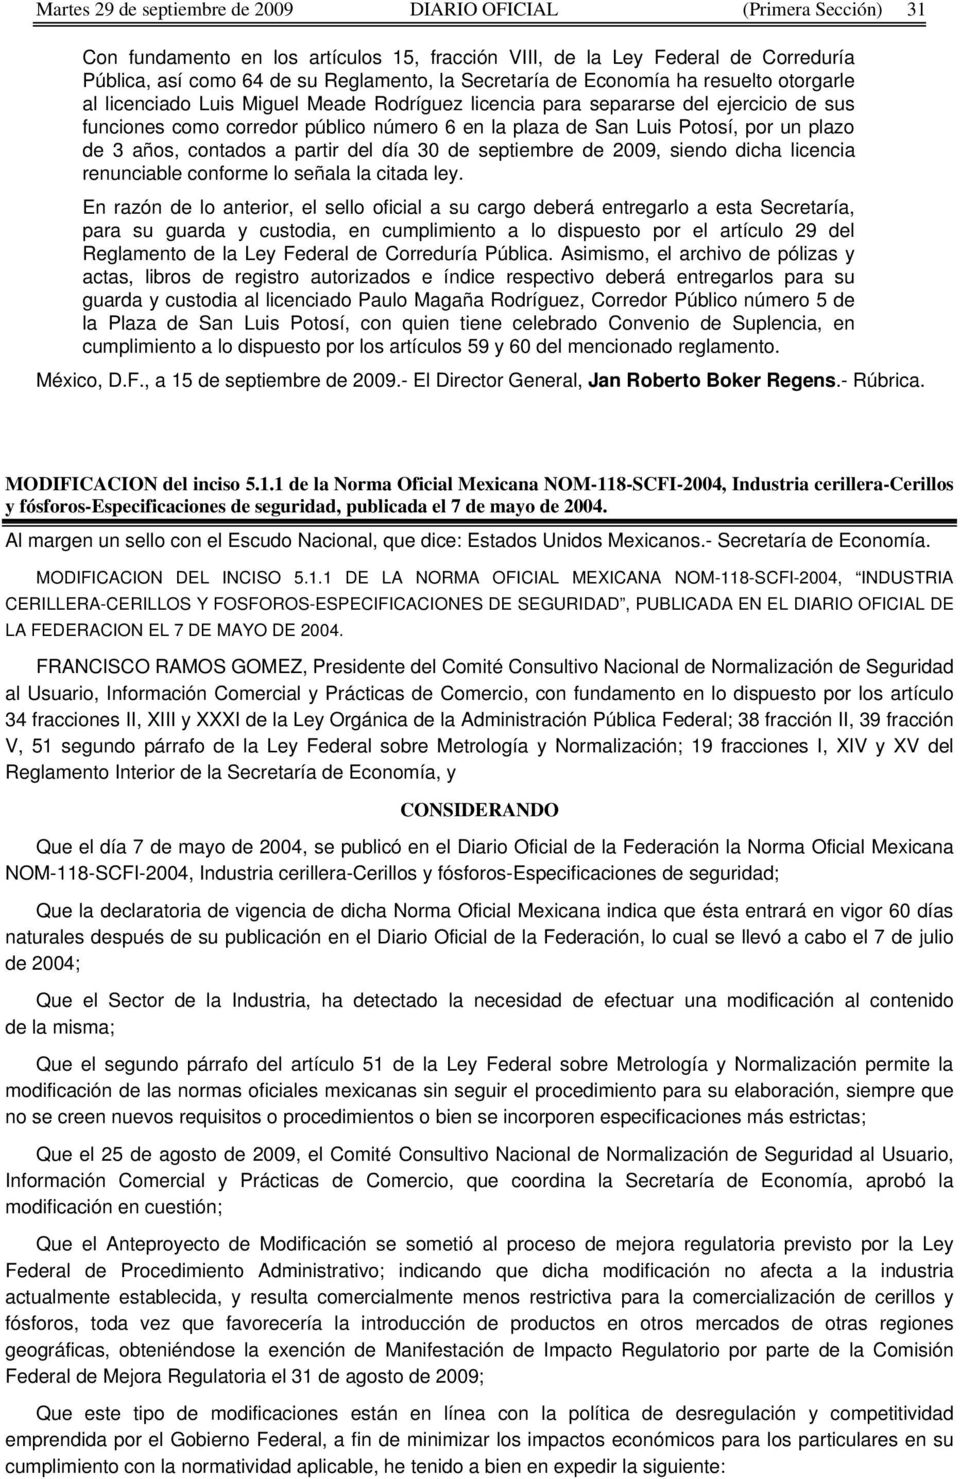 Potosí, por un plazo de 3 años, contados a partir del día 30 de septiembre de 2009, siendo dicha licencia renunciable conforme lo señala la citada ley.